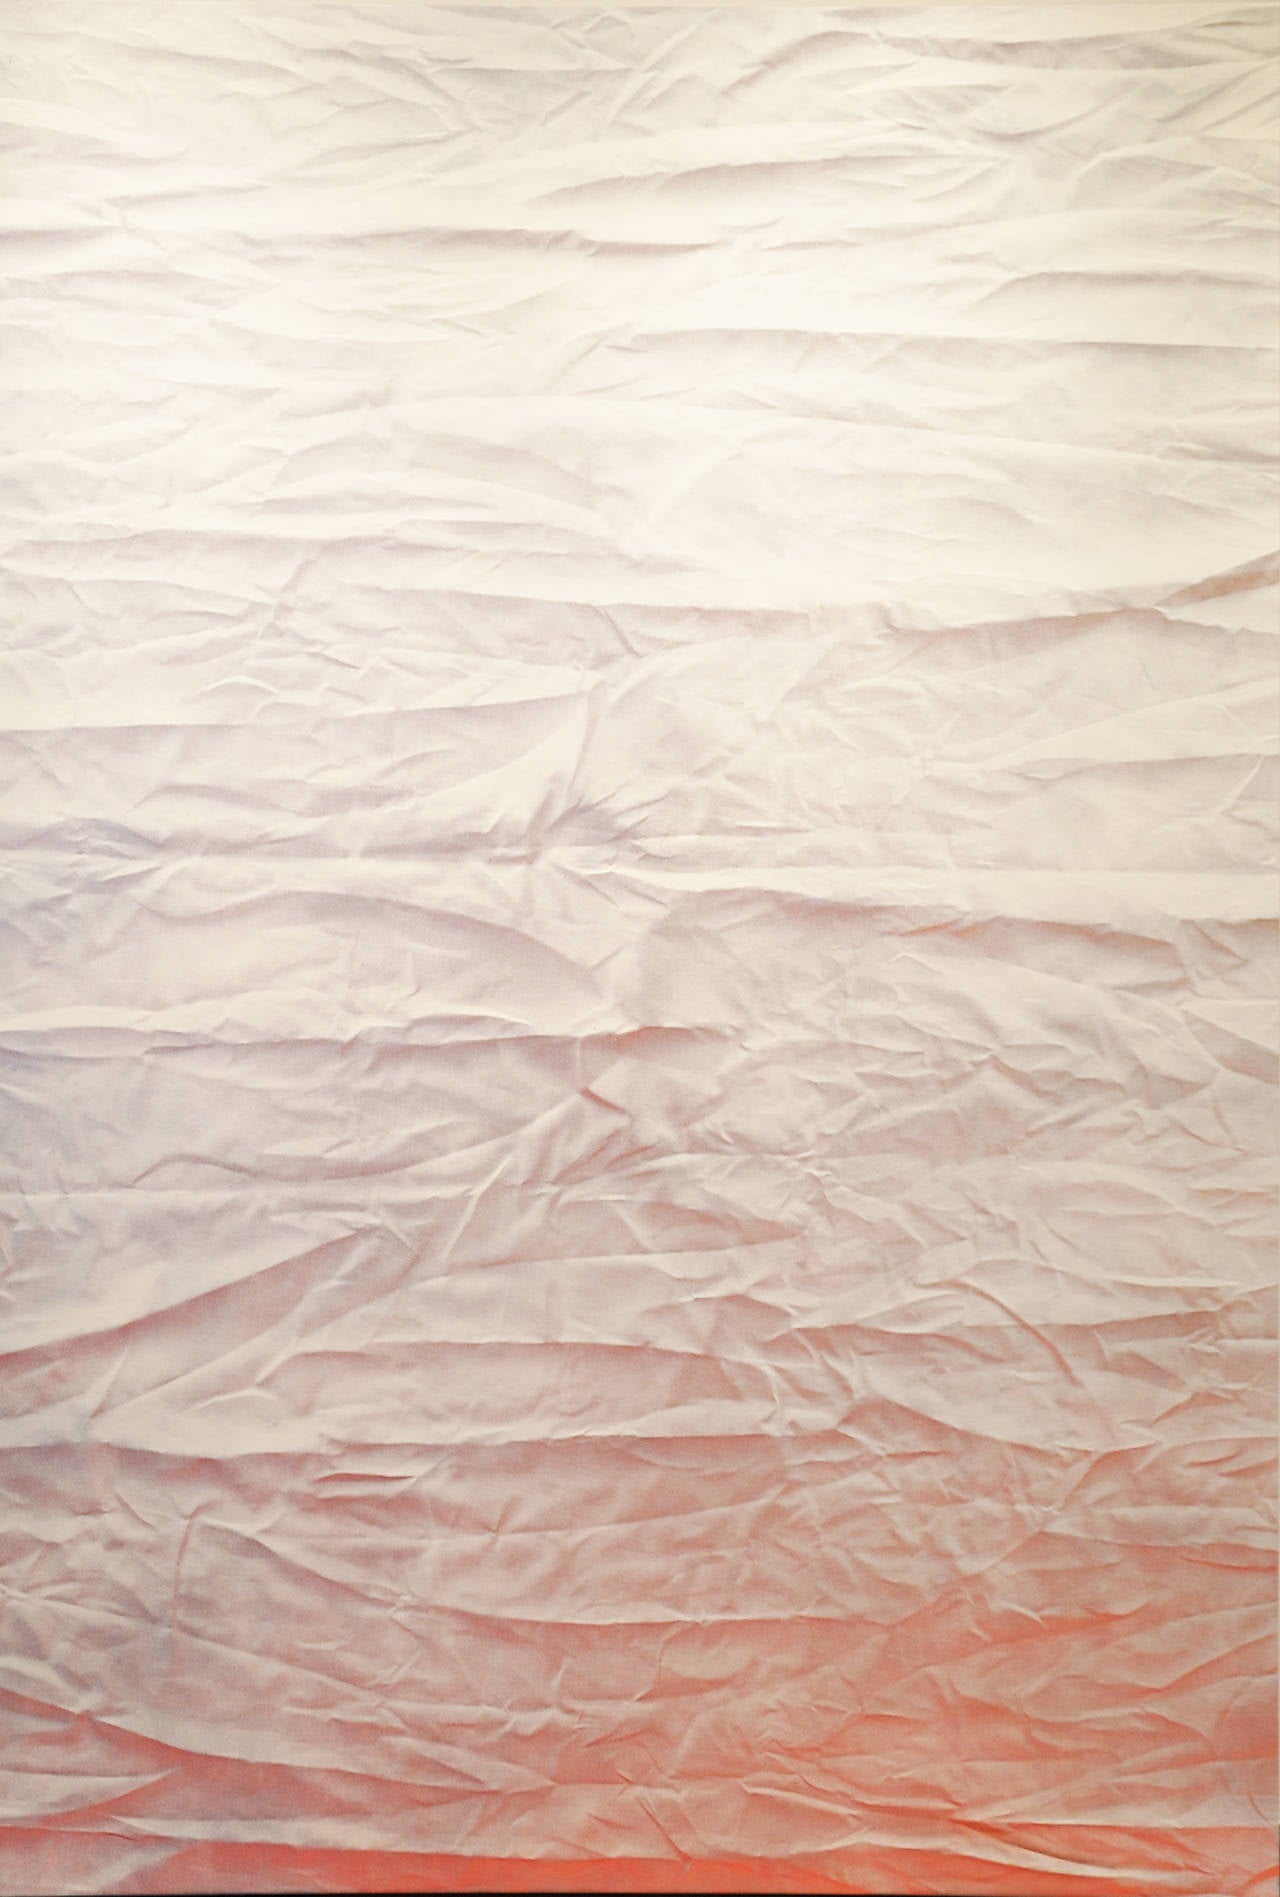 Abstract Painting Bonnie Maygarden - L'image a été supprimée par utilisateur